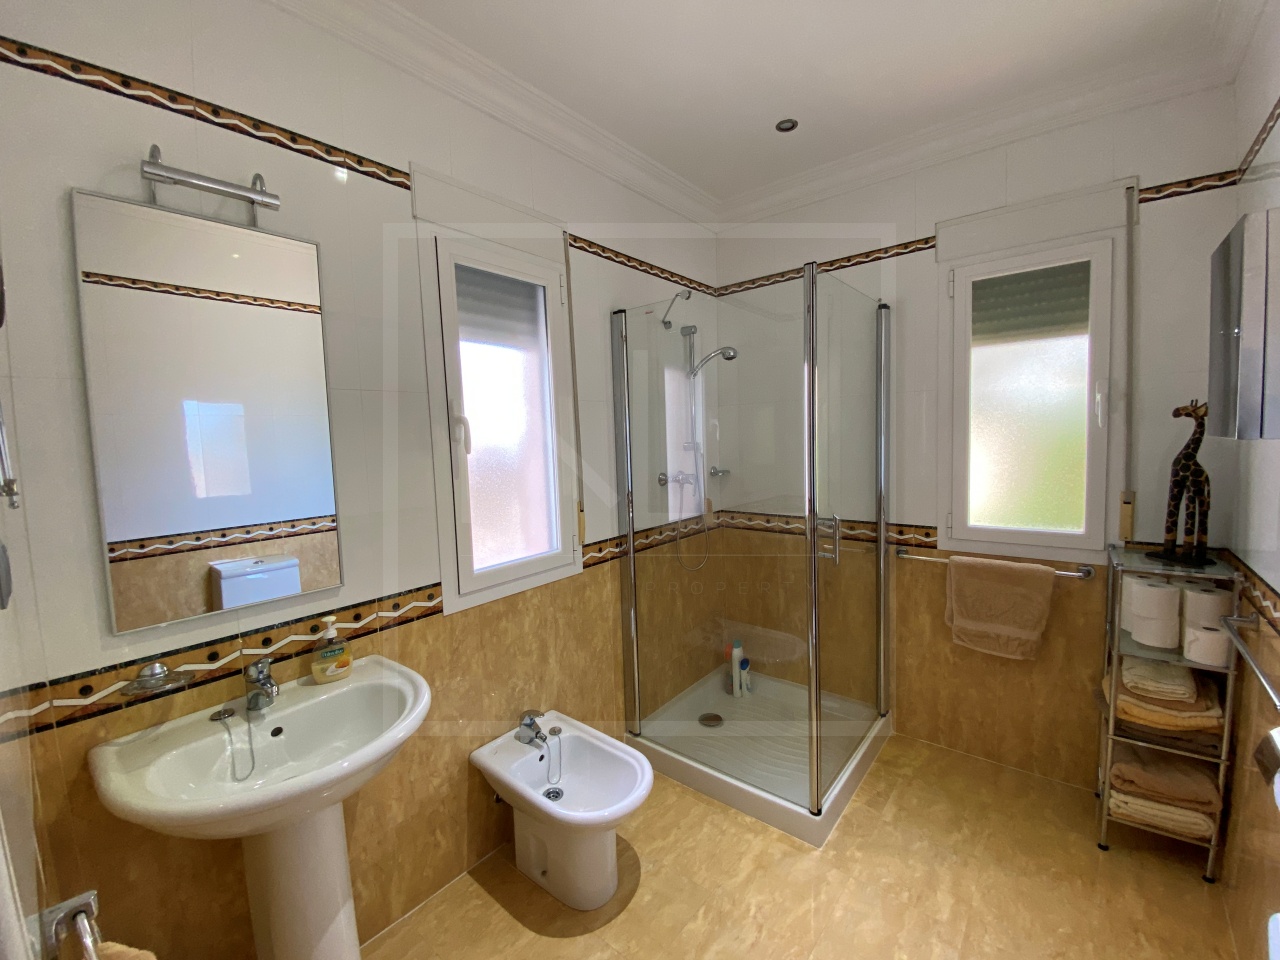 Villa de 4 chambres, 4 salles de bains à vendre à Javea